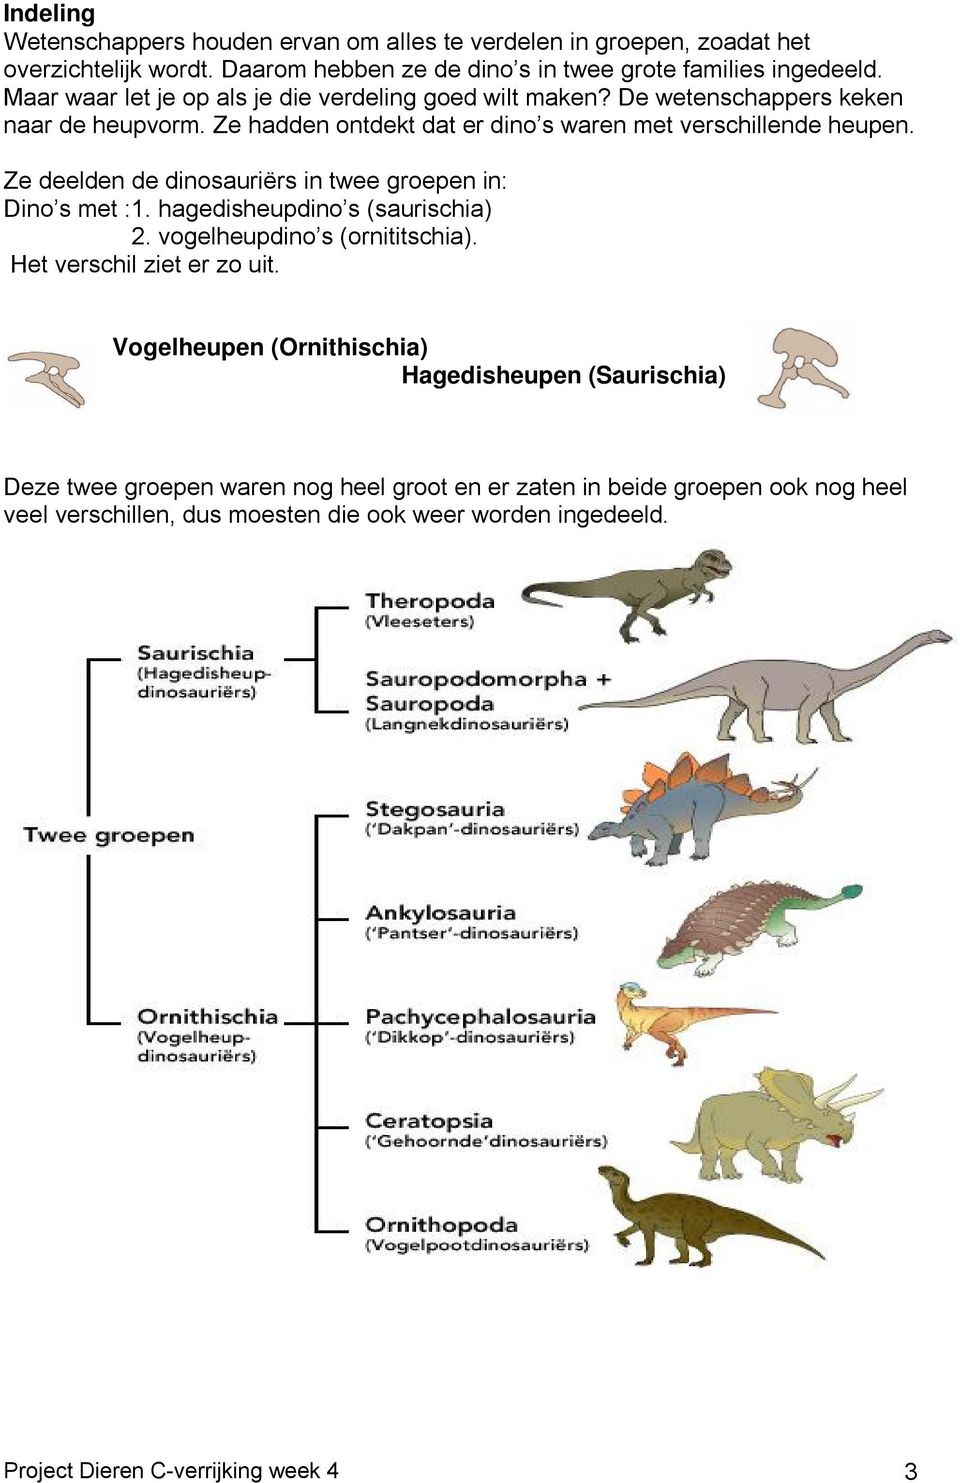 Ze deelden de dinosauriërs in twee groepen in: Dino s met :1. hagedisheupdino s (saurischia) 2. vogelheupdino s (ornititschia). Het verschil ziet er zo uit.